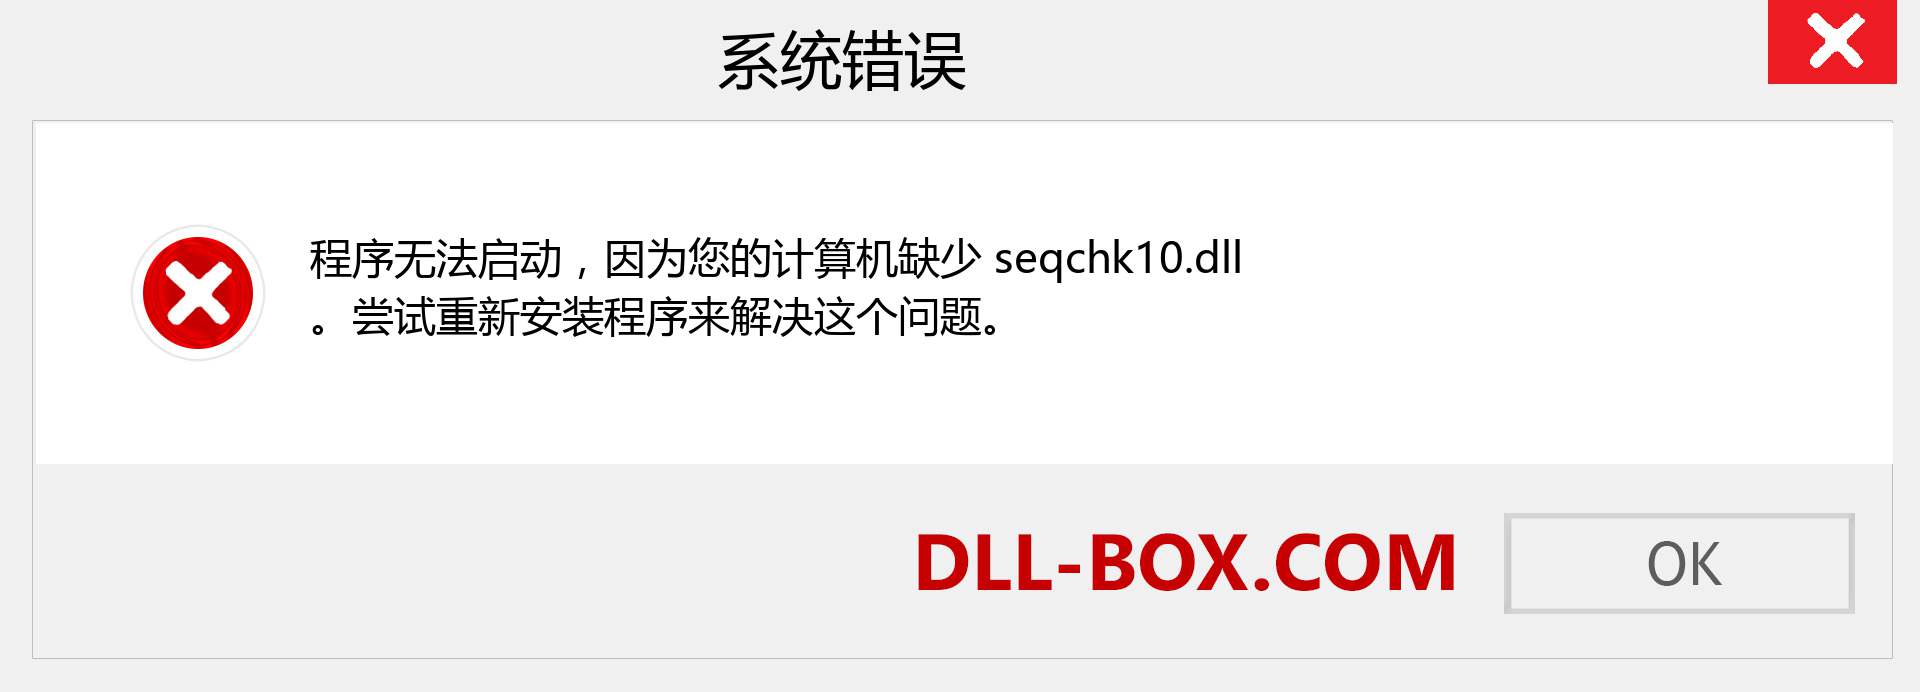 seqchk10.dll 文件丢失？。 适用于 Windows 7、8、10 的下载 - 修复 Windows、照片、图像上的 seqchk10 dll 丢失错误